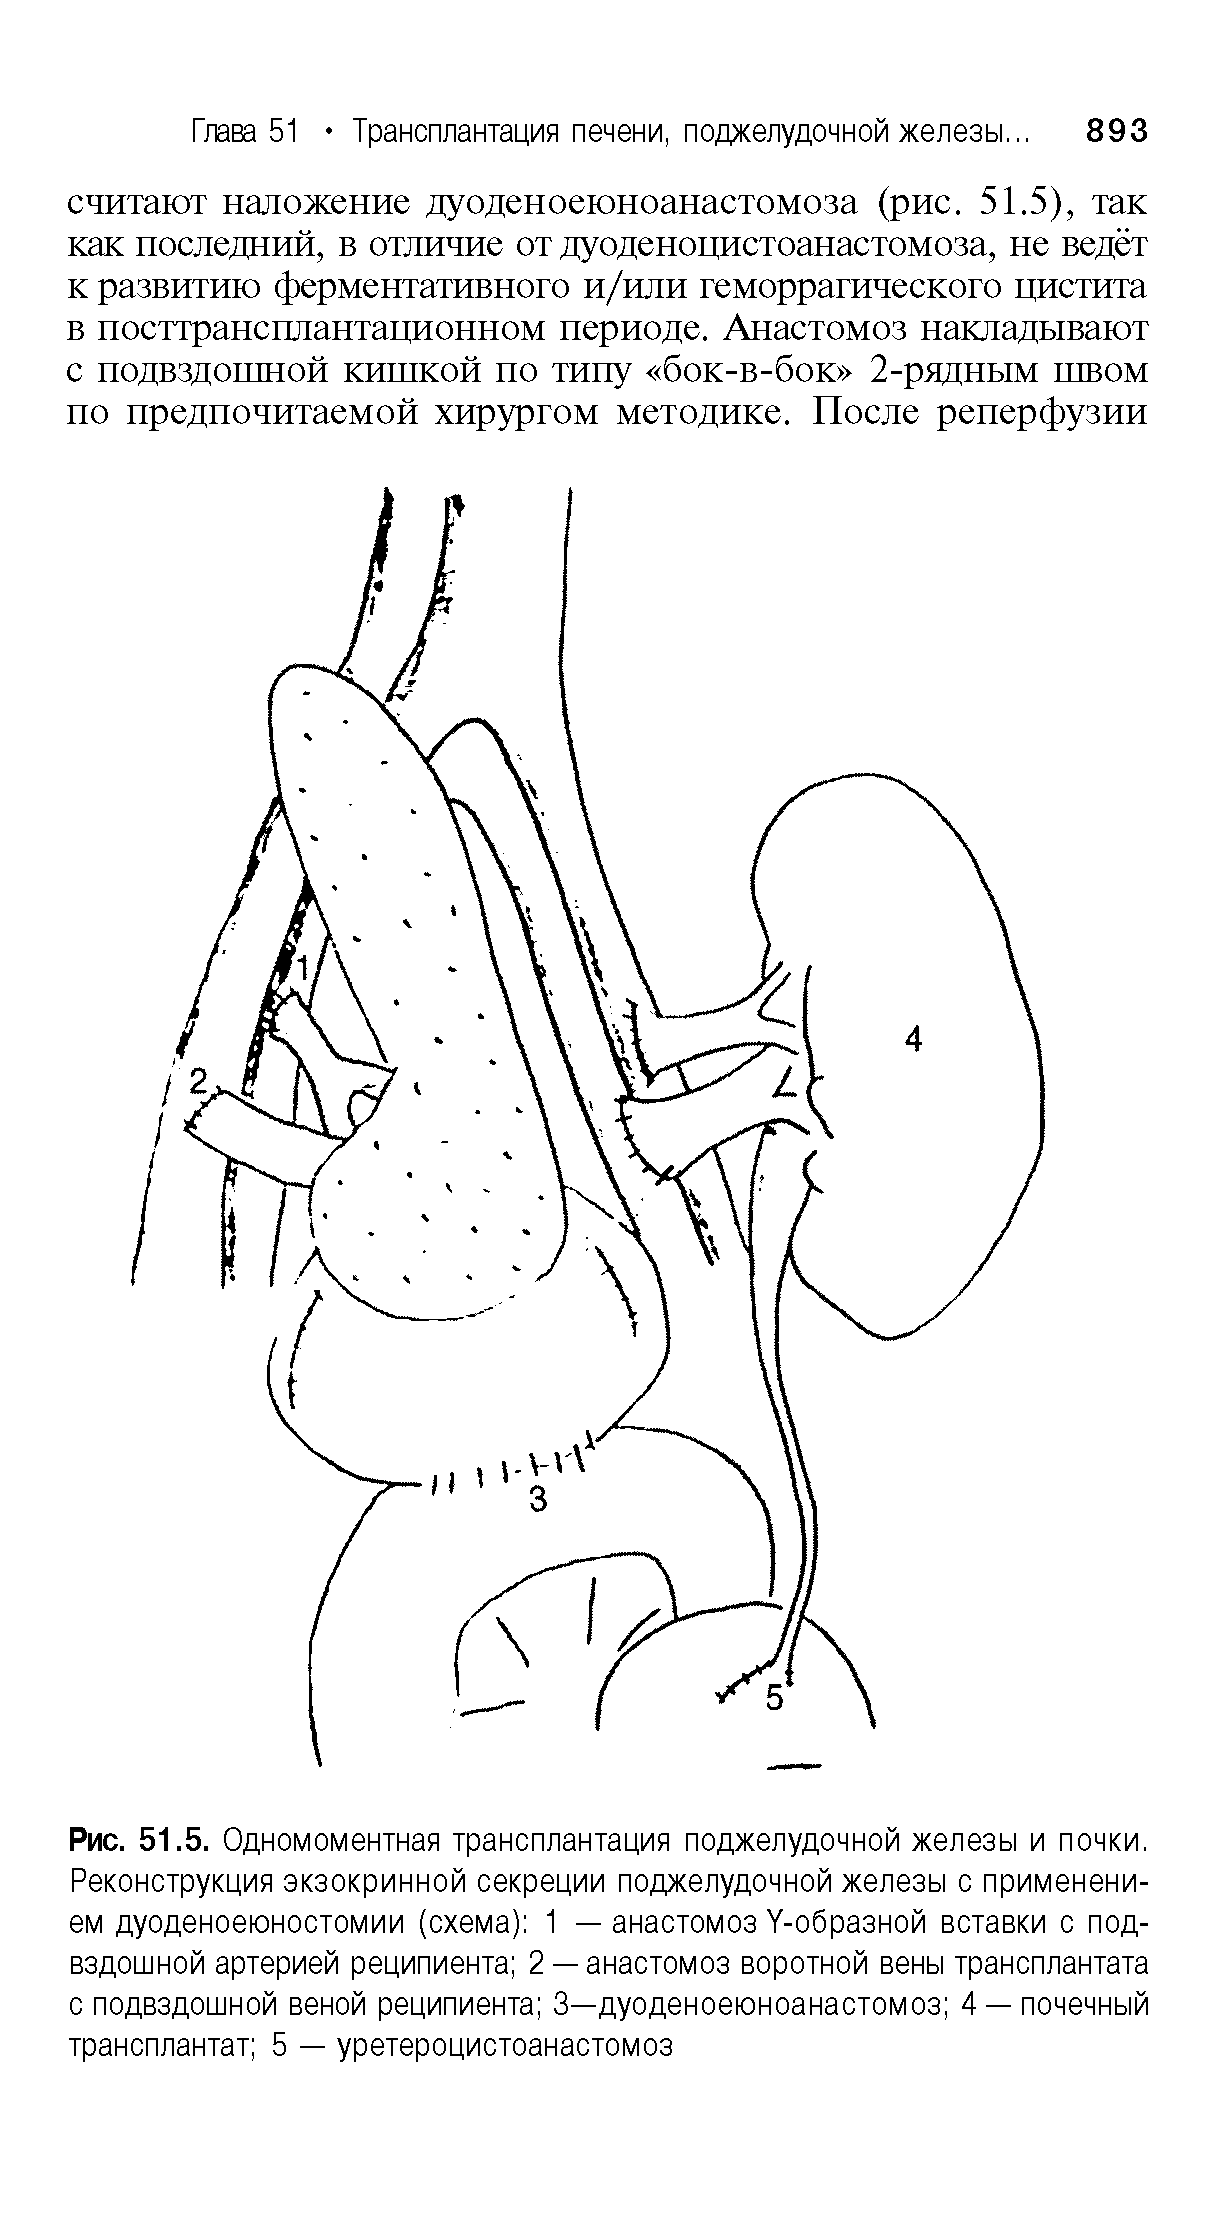 Рис. 51.5. Одномоментная трансплантация поджелудочной железы и почки. Реконструкция экзокринной секреции поджелудочной железы с применением дуоденоеюностомии (схема) 1 — анастомоз У-образной вставки с подвздошной артерией реципиента 2 —анастомоз воротной вены трансплантата с подвздошной веной реципиента 3—дуоденоеюноанастомоз 4 — почечный трансплантат 5 — уретероцистоанастомоз...